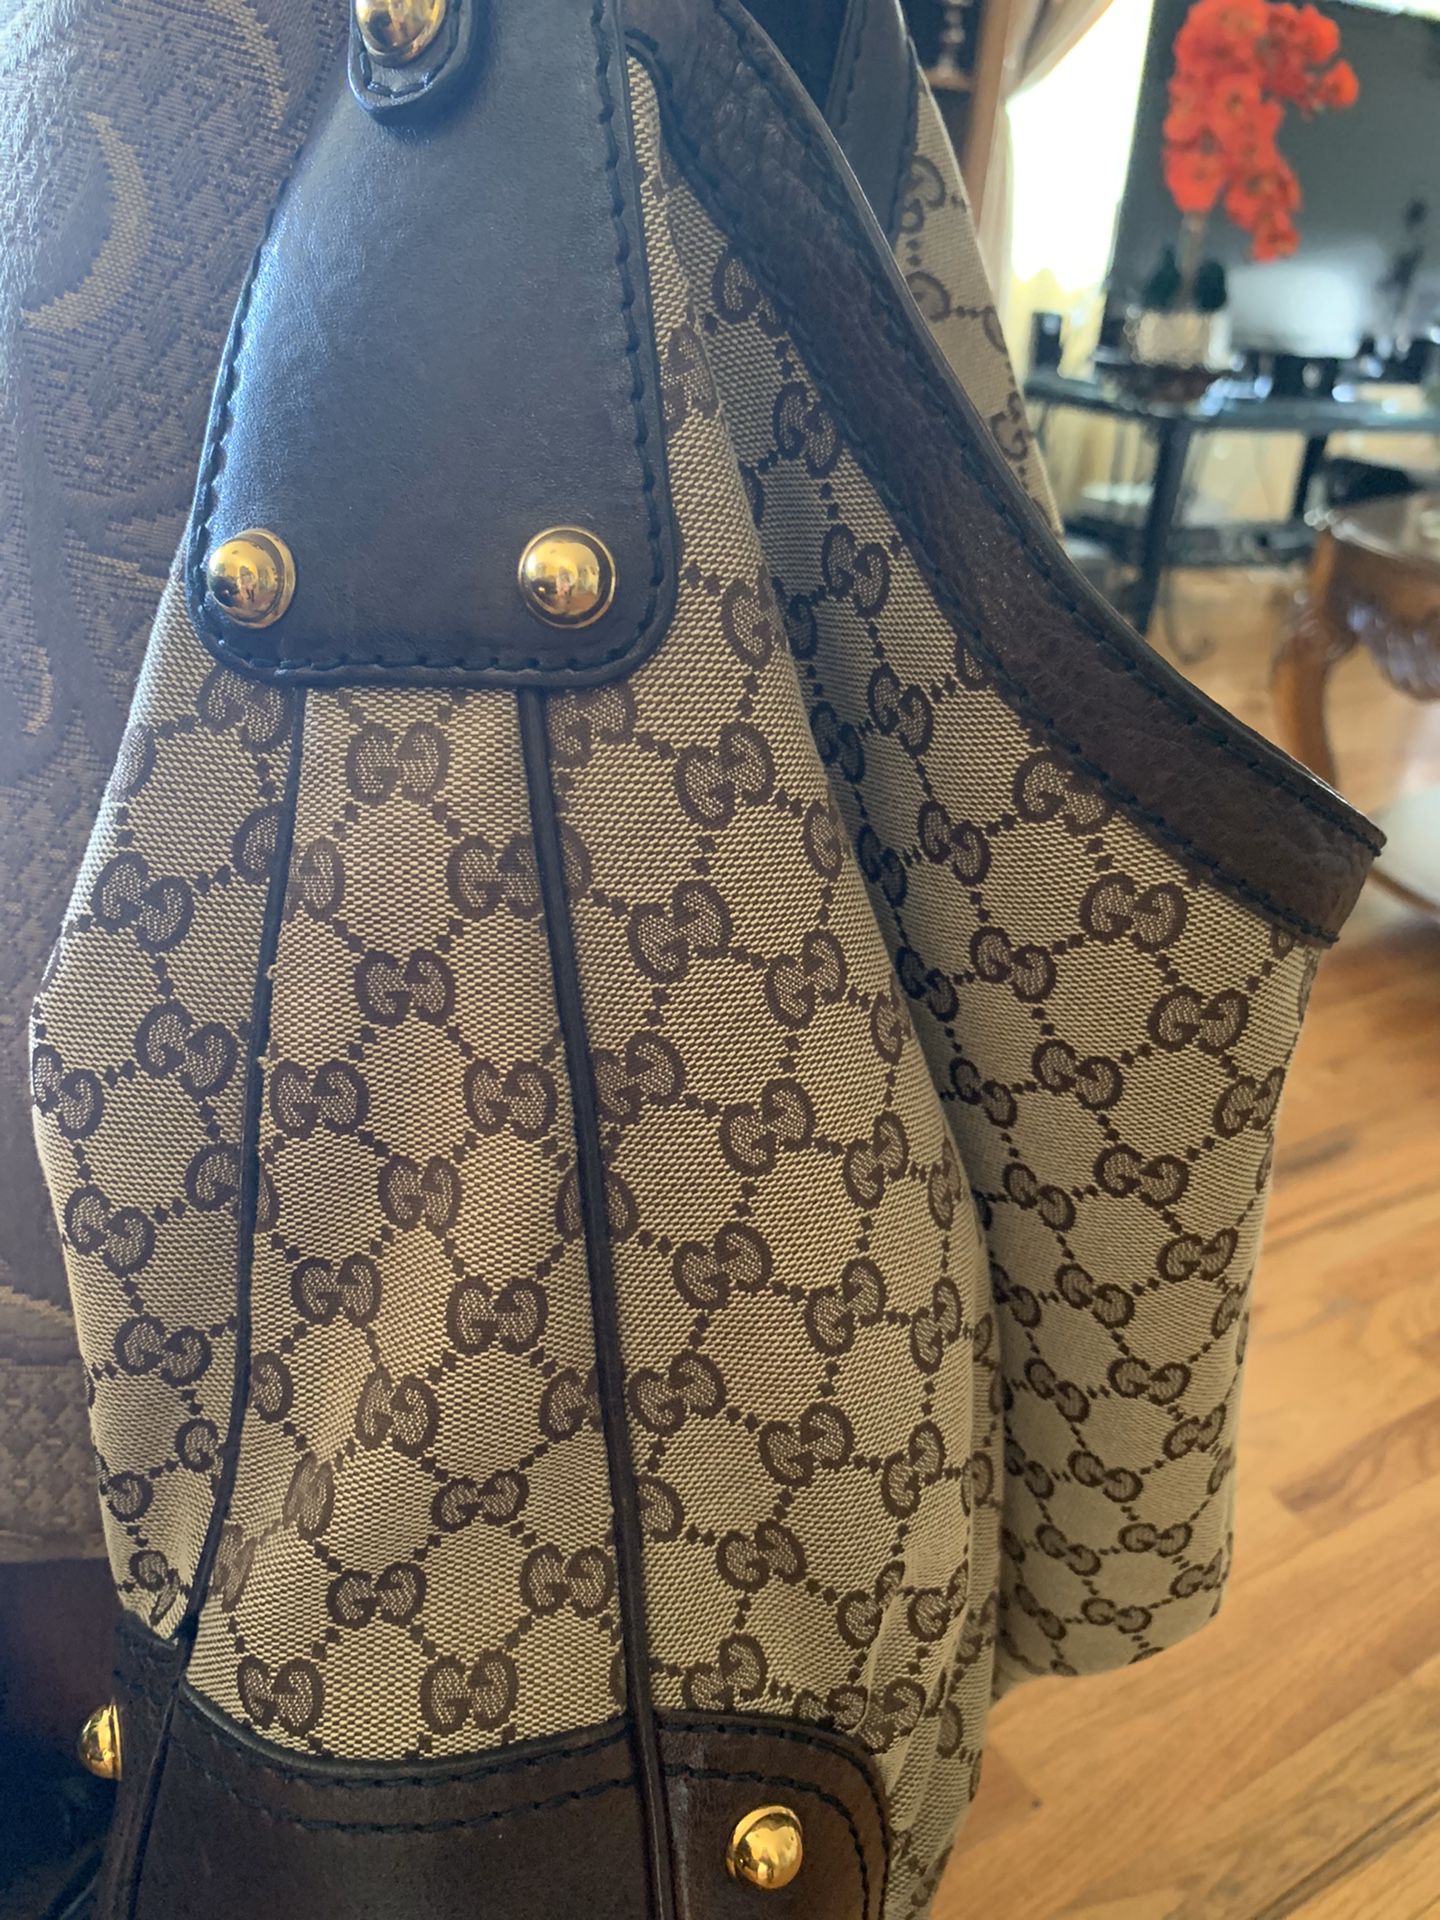 Original Gucci bag $450